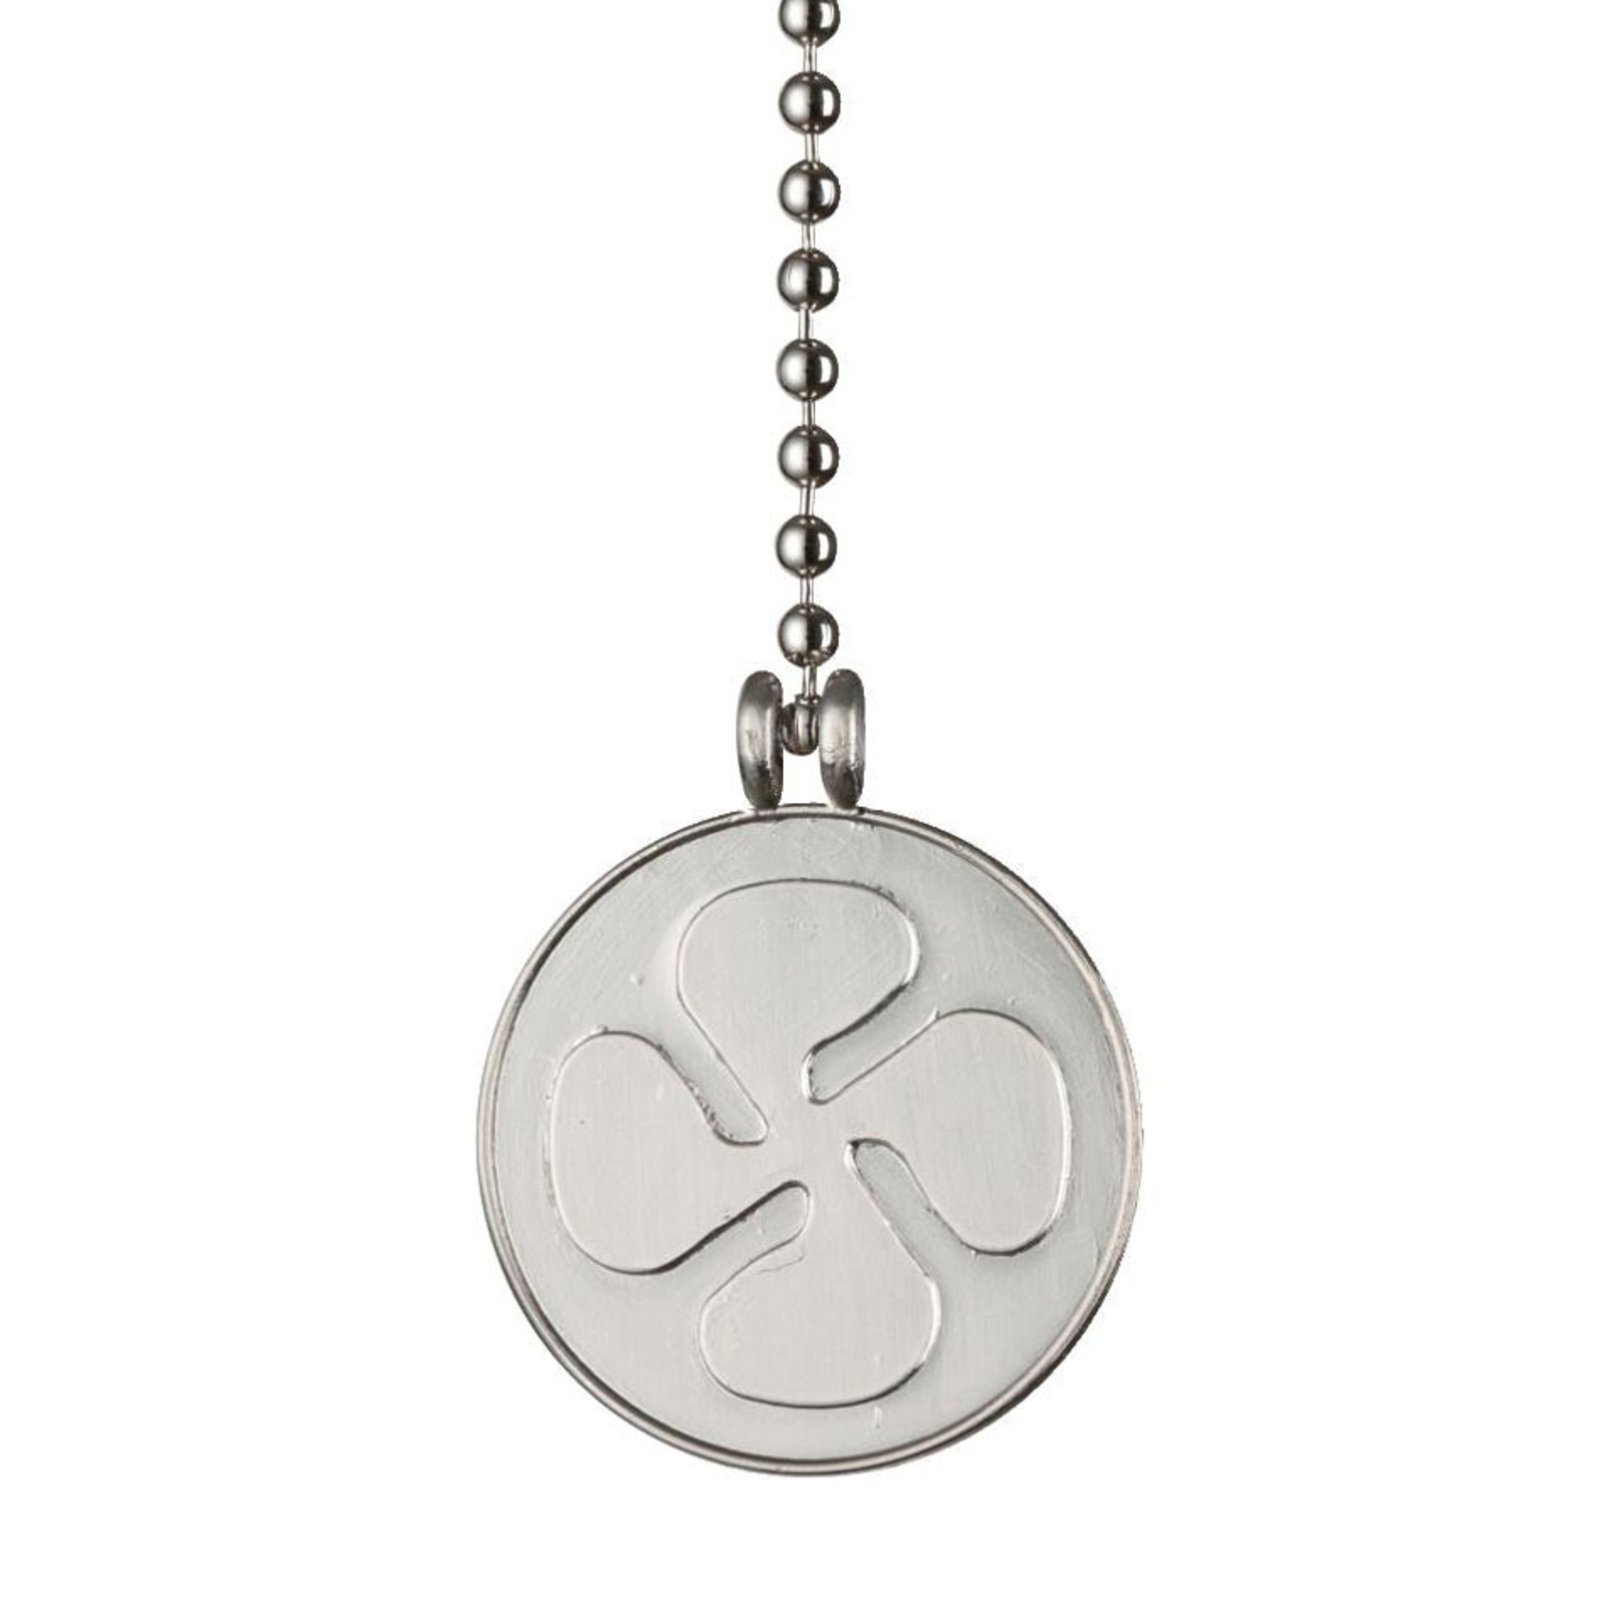 Westinghouse fan medallion chain nickel